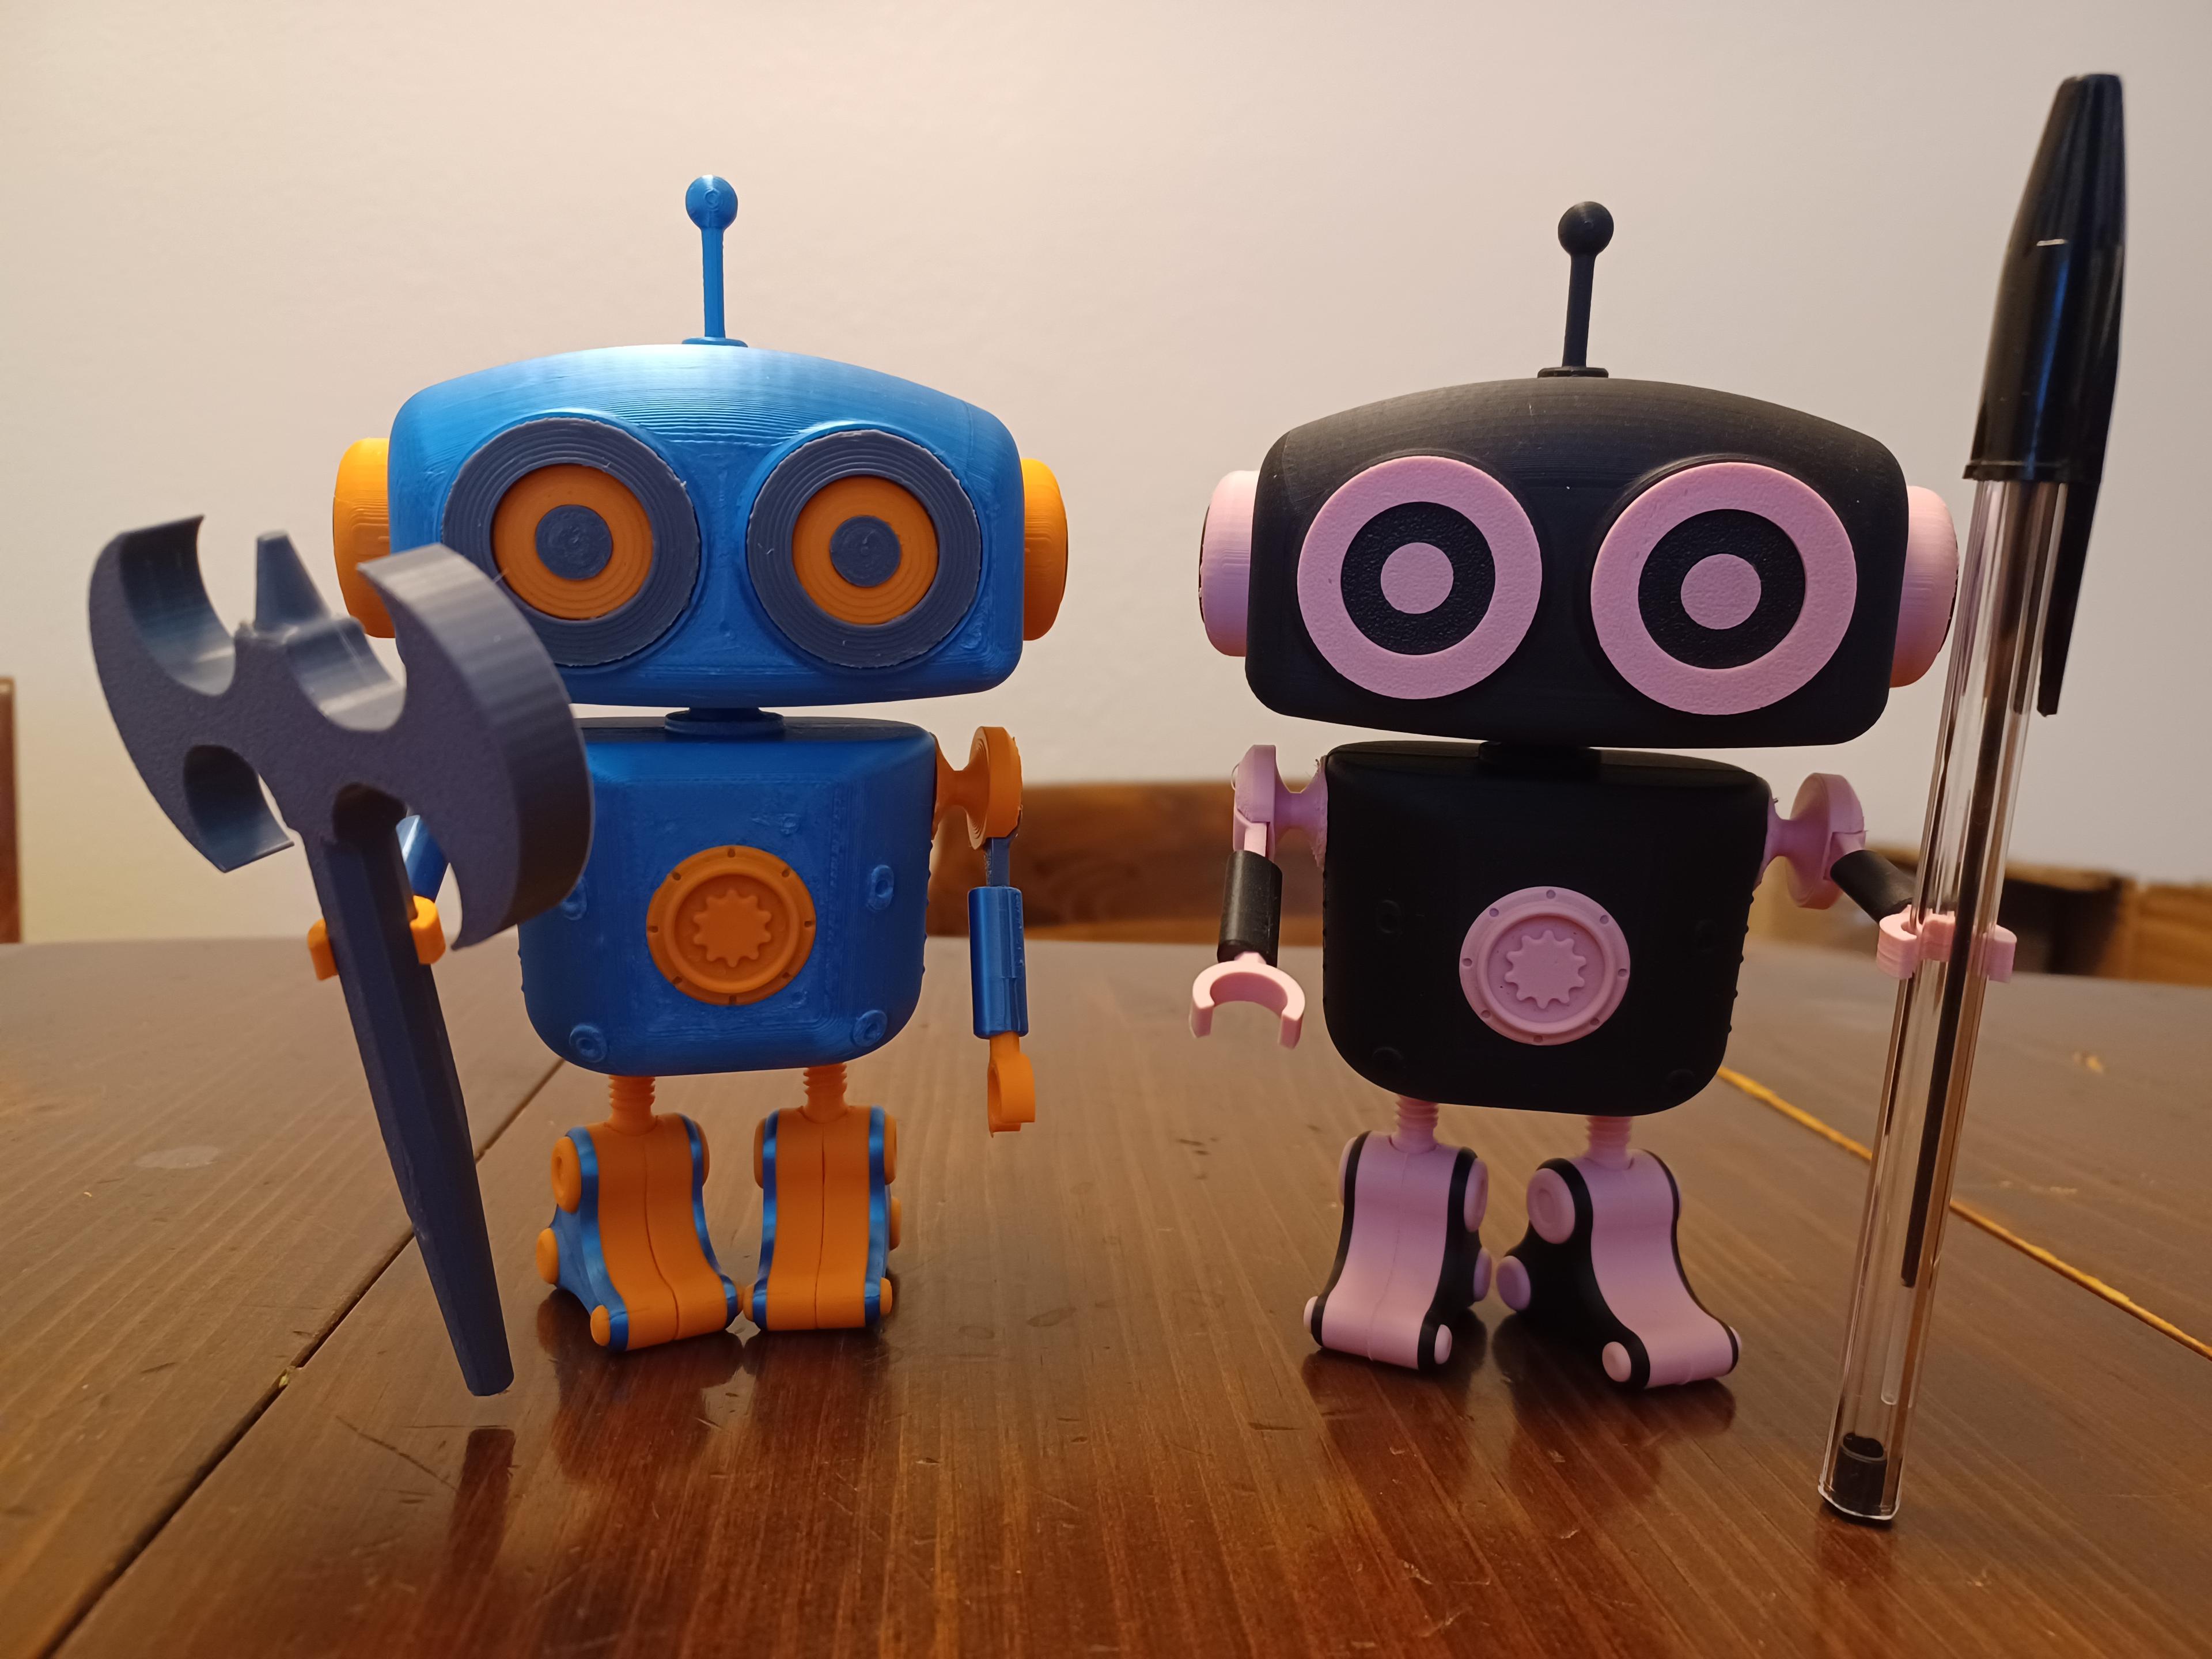 Guardian Robot, Fully 3D Printed, Articulating, Pen Holder, Pencil Holder, Cable Holder 3d model